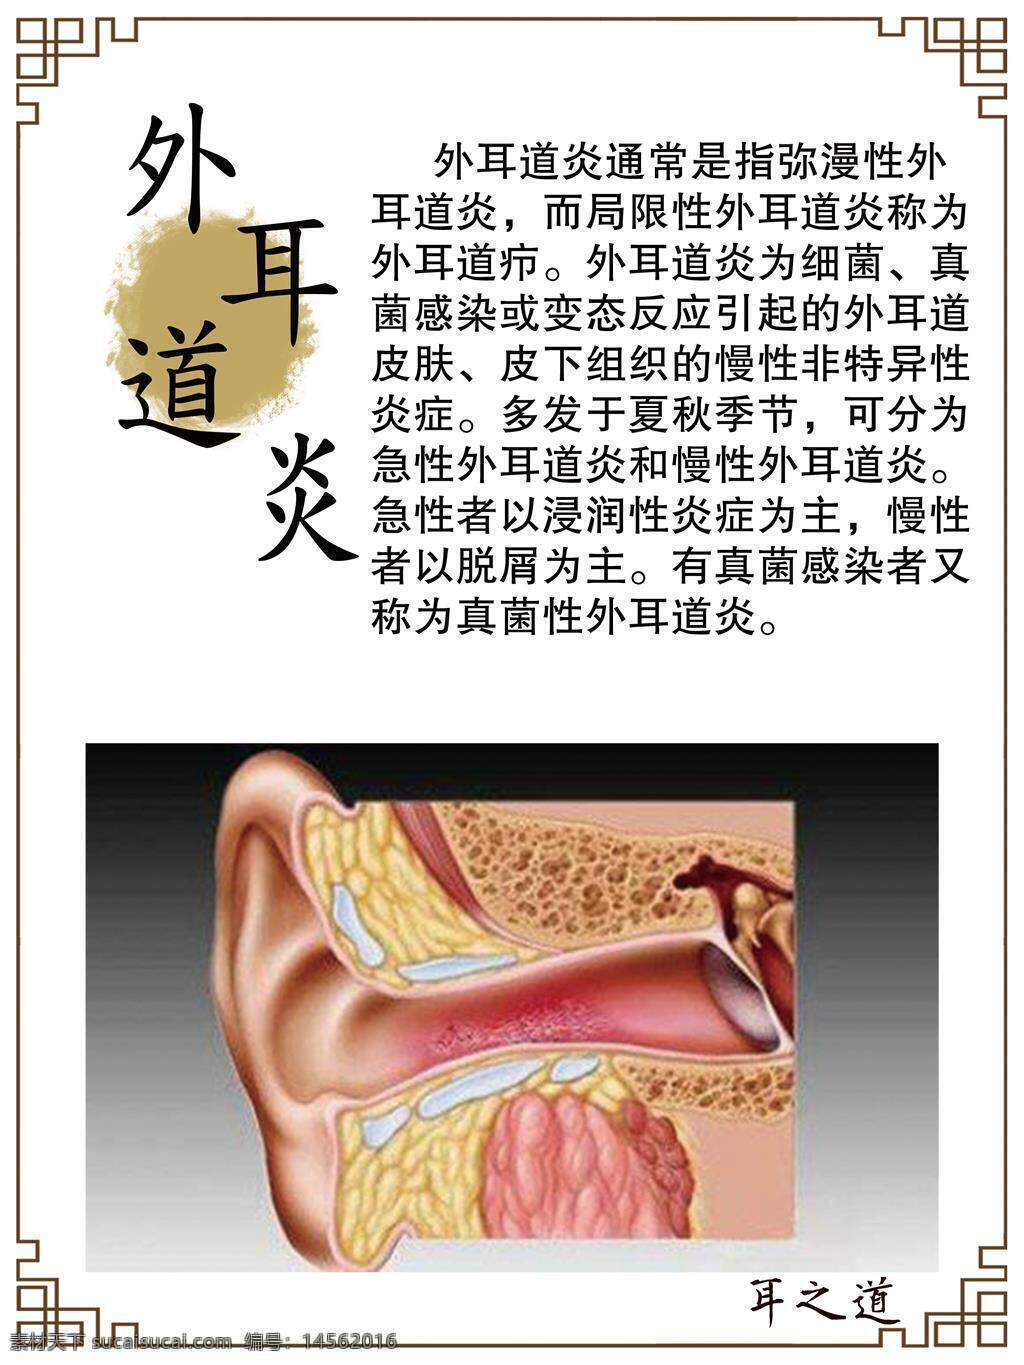 外耳道炎 什么是外耳道炎 中医养生 养生文化 古法养生 护耳